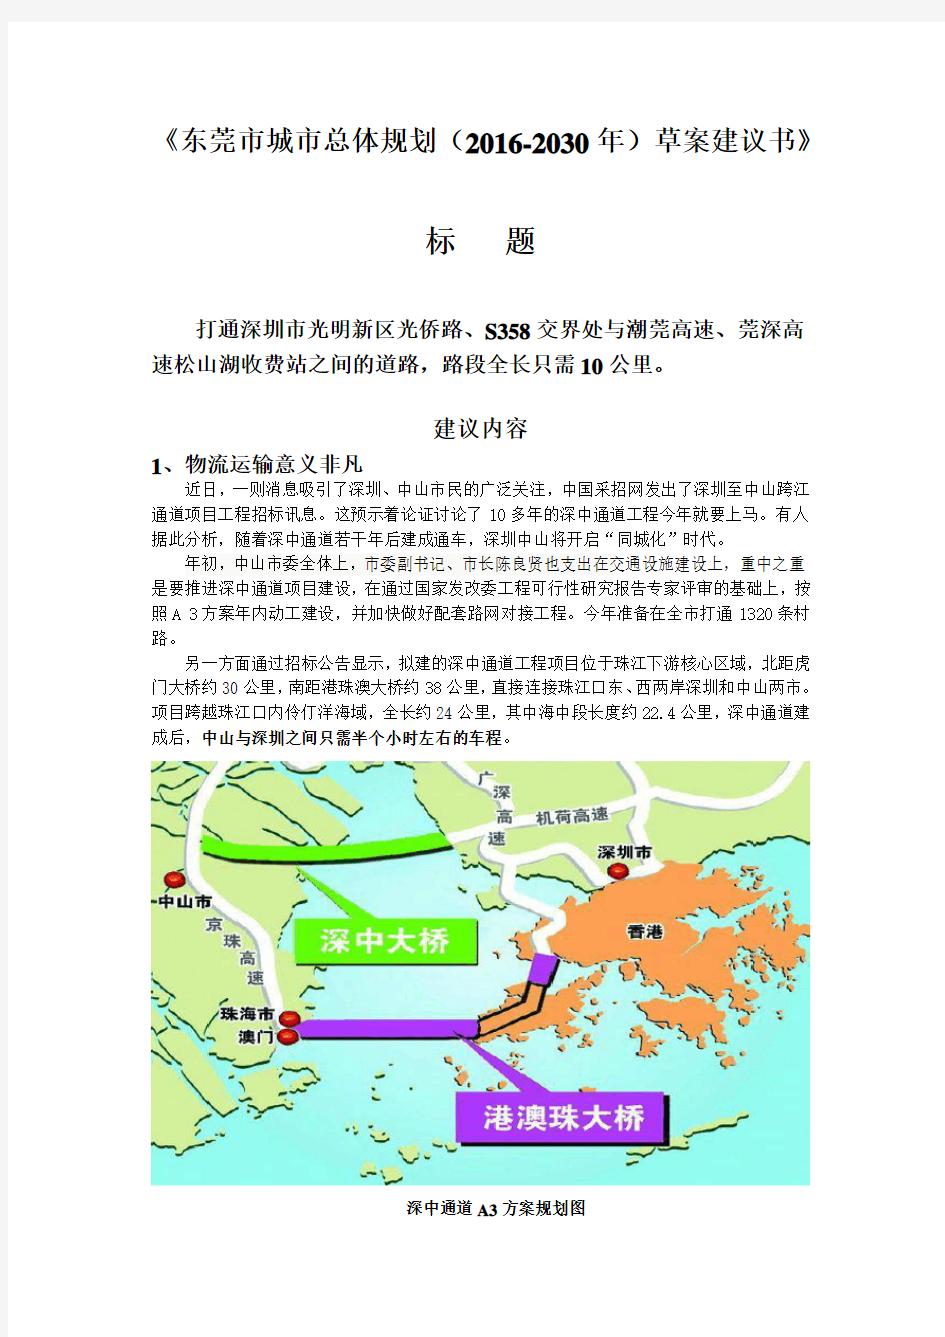 东莞市城市总体规划(2016-2030年)草案建议书